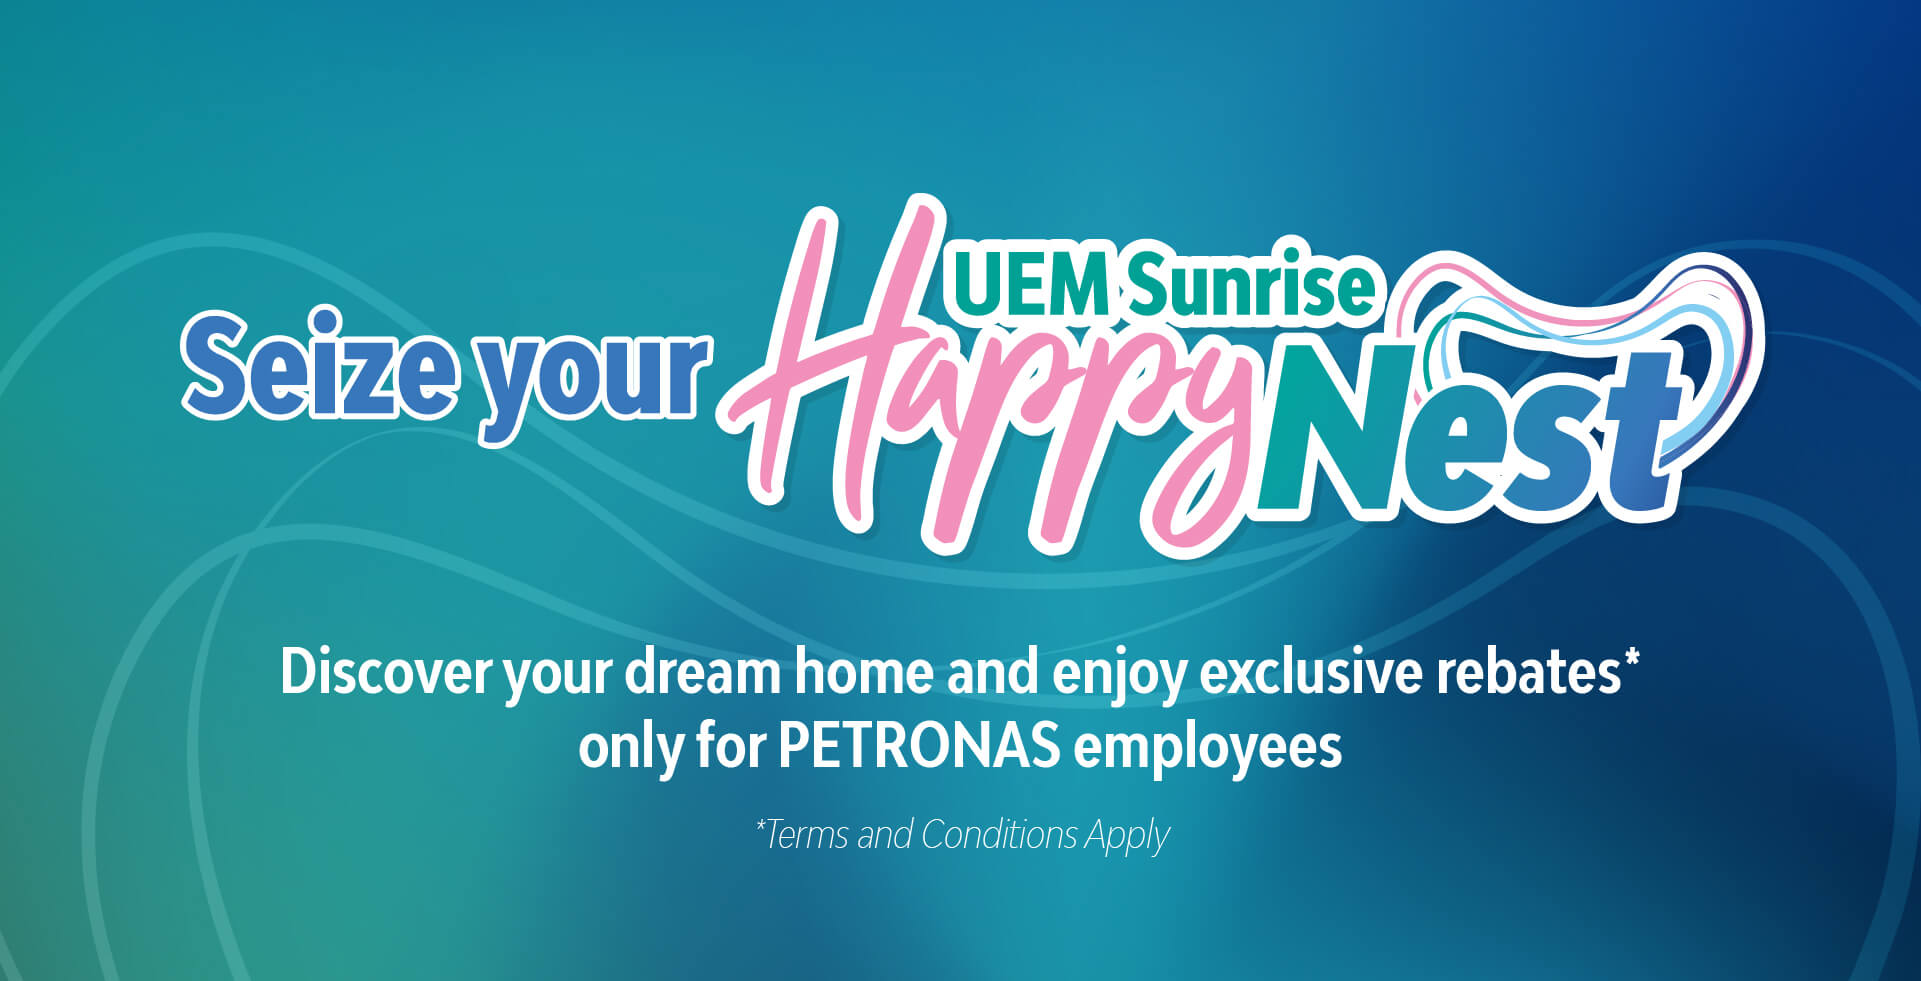 Happenings  Petronas employees enjoy extra rebates*!  UEM Sunrise